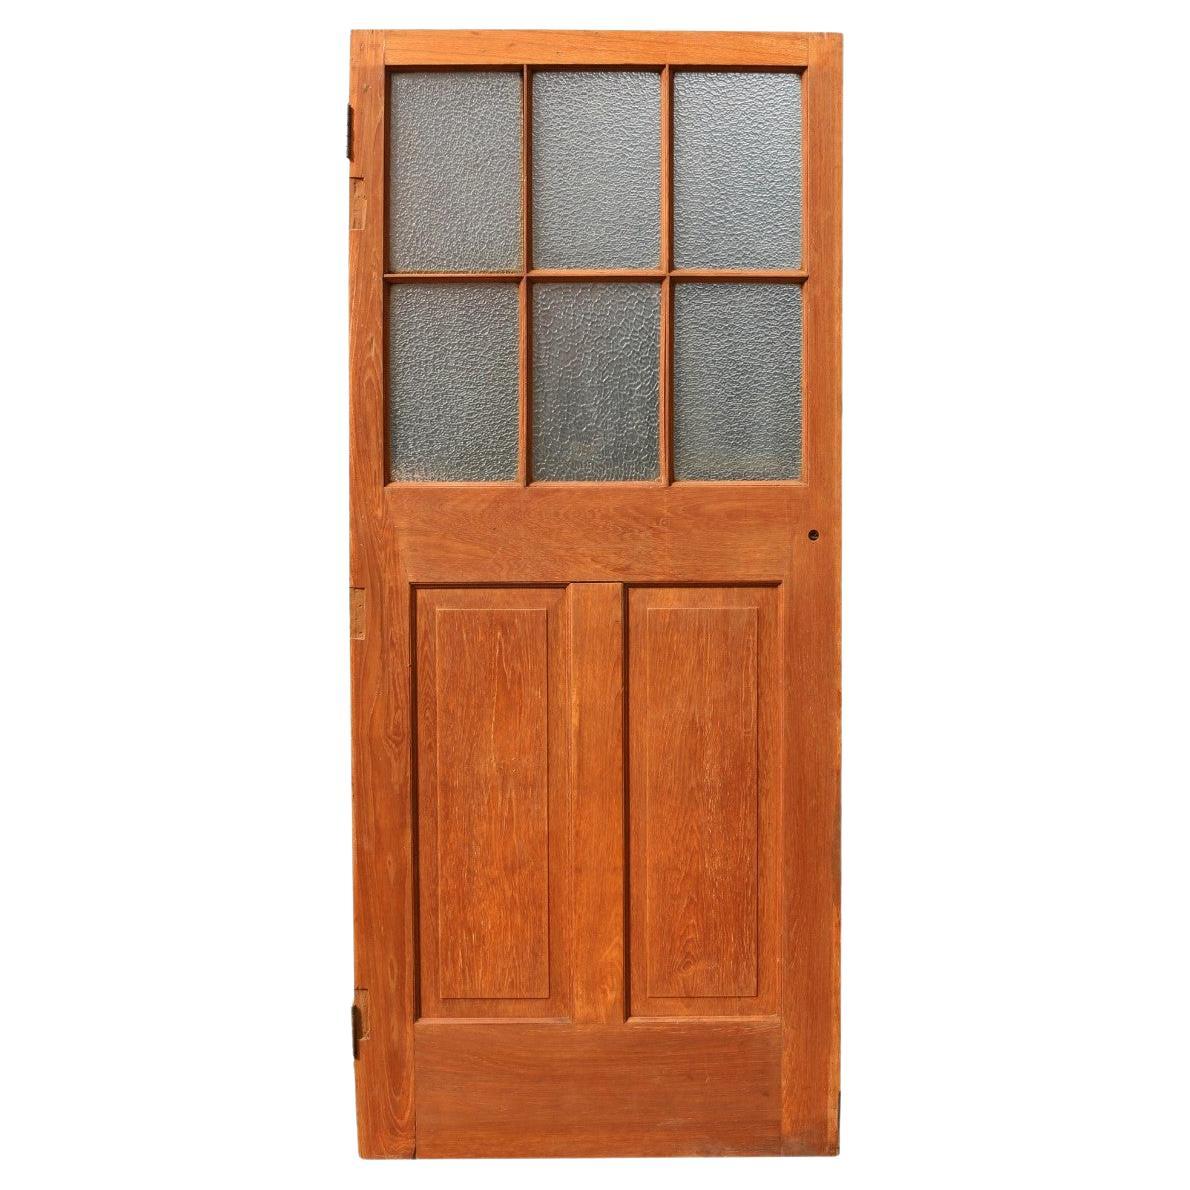 Reclaimed Glazed Teak Wood Door